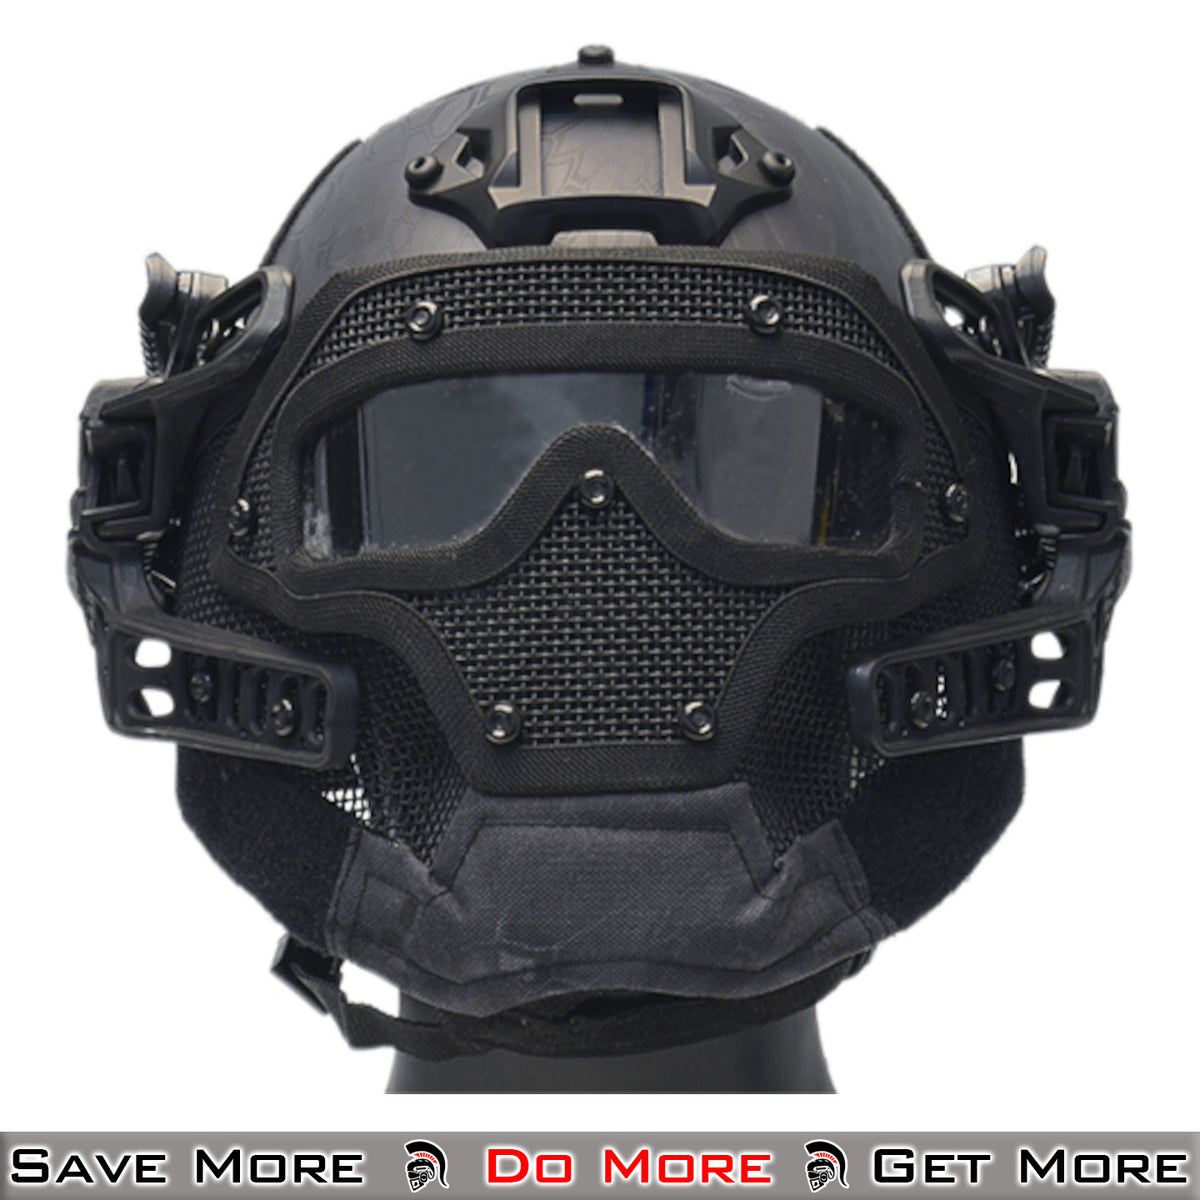 Wosport Tactical Helmet Black.